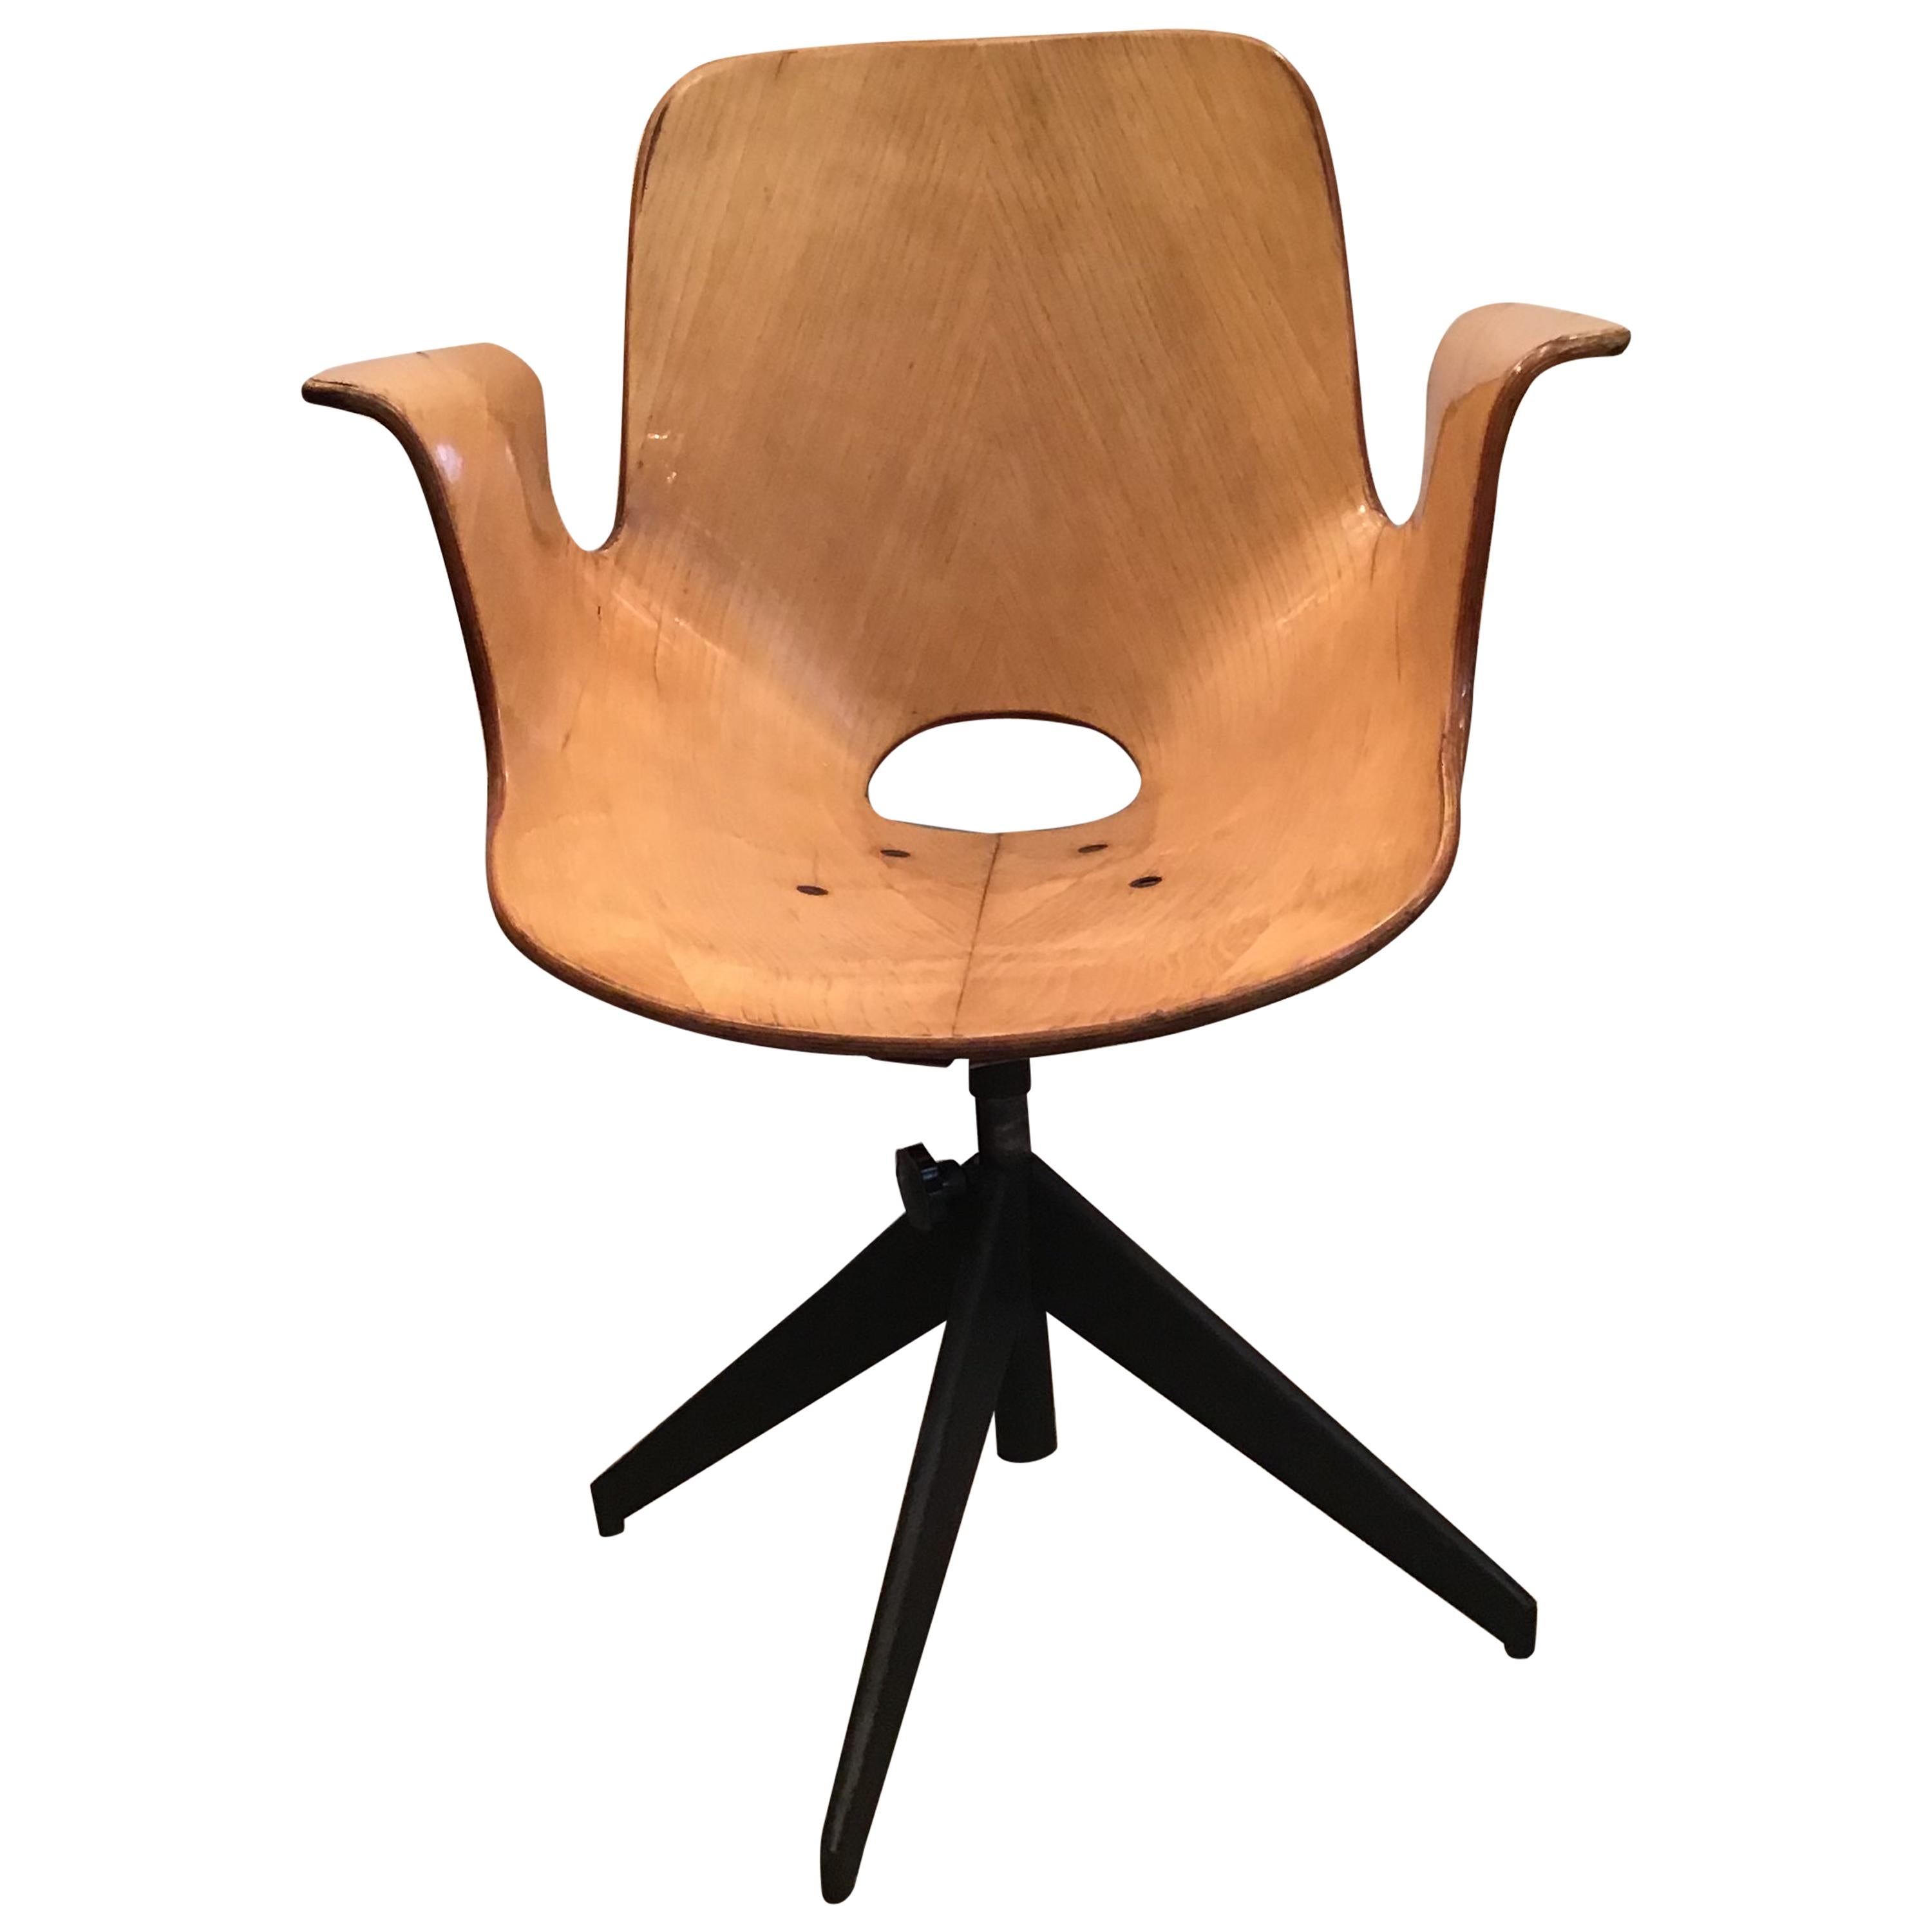 Medea Dreh- und Höhenverstellbarer Sessel aus Holz und Eisen, 1950, Italien